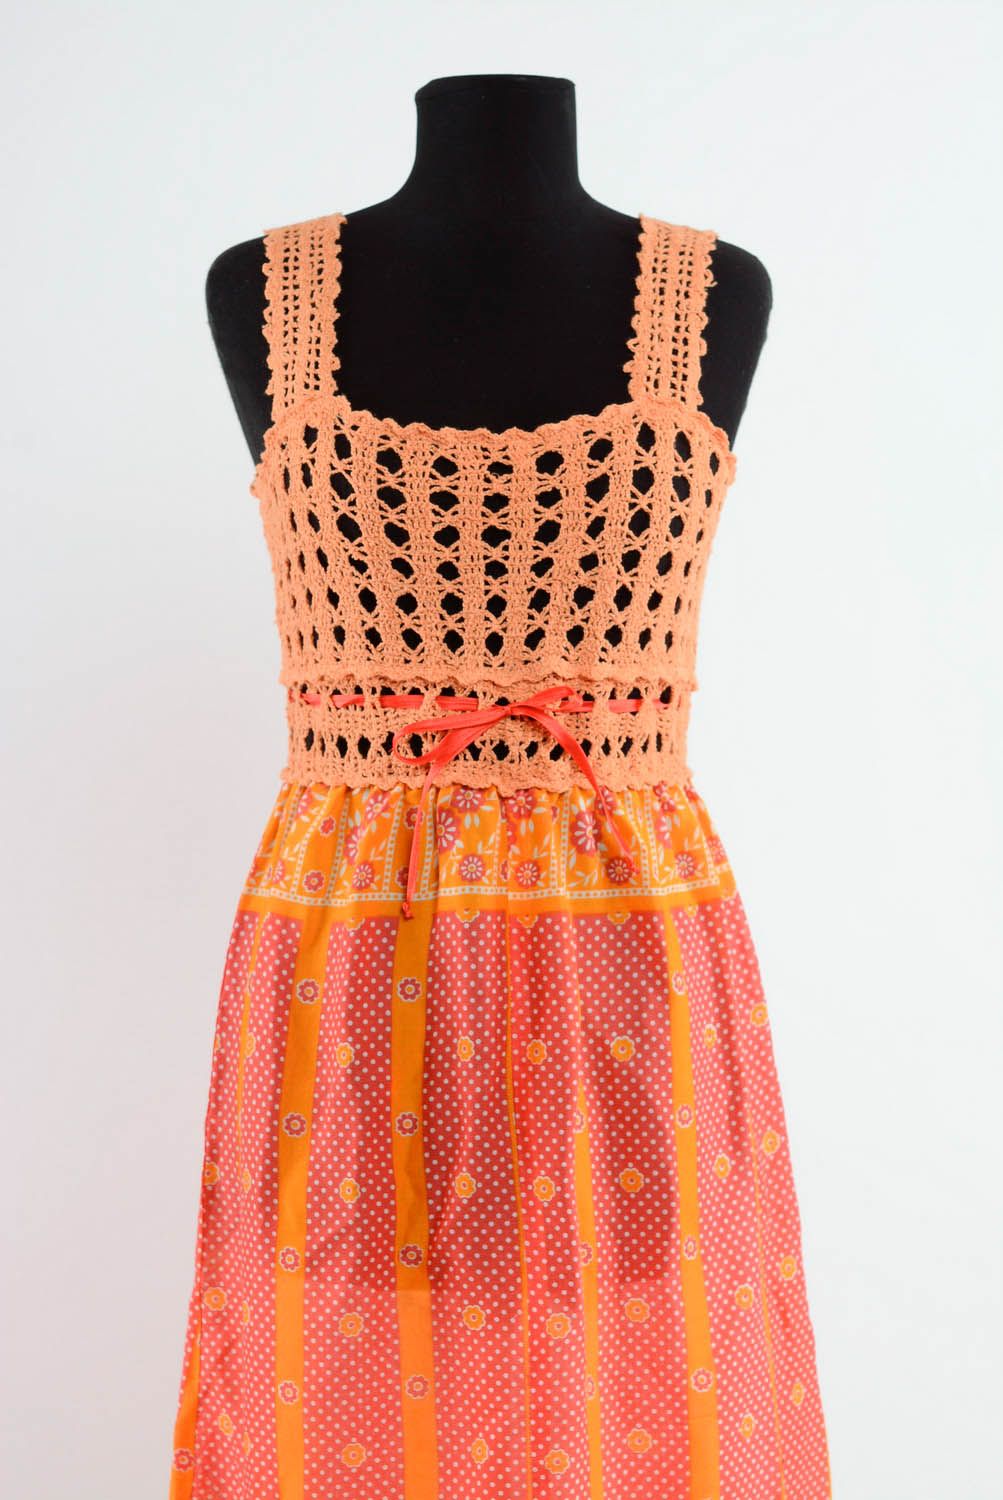 Robe couleur corail en acrylique tricotée à main photo 2